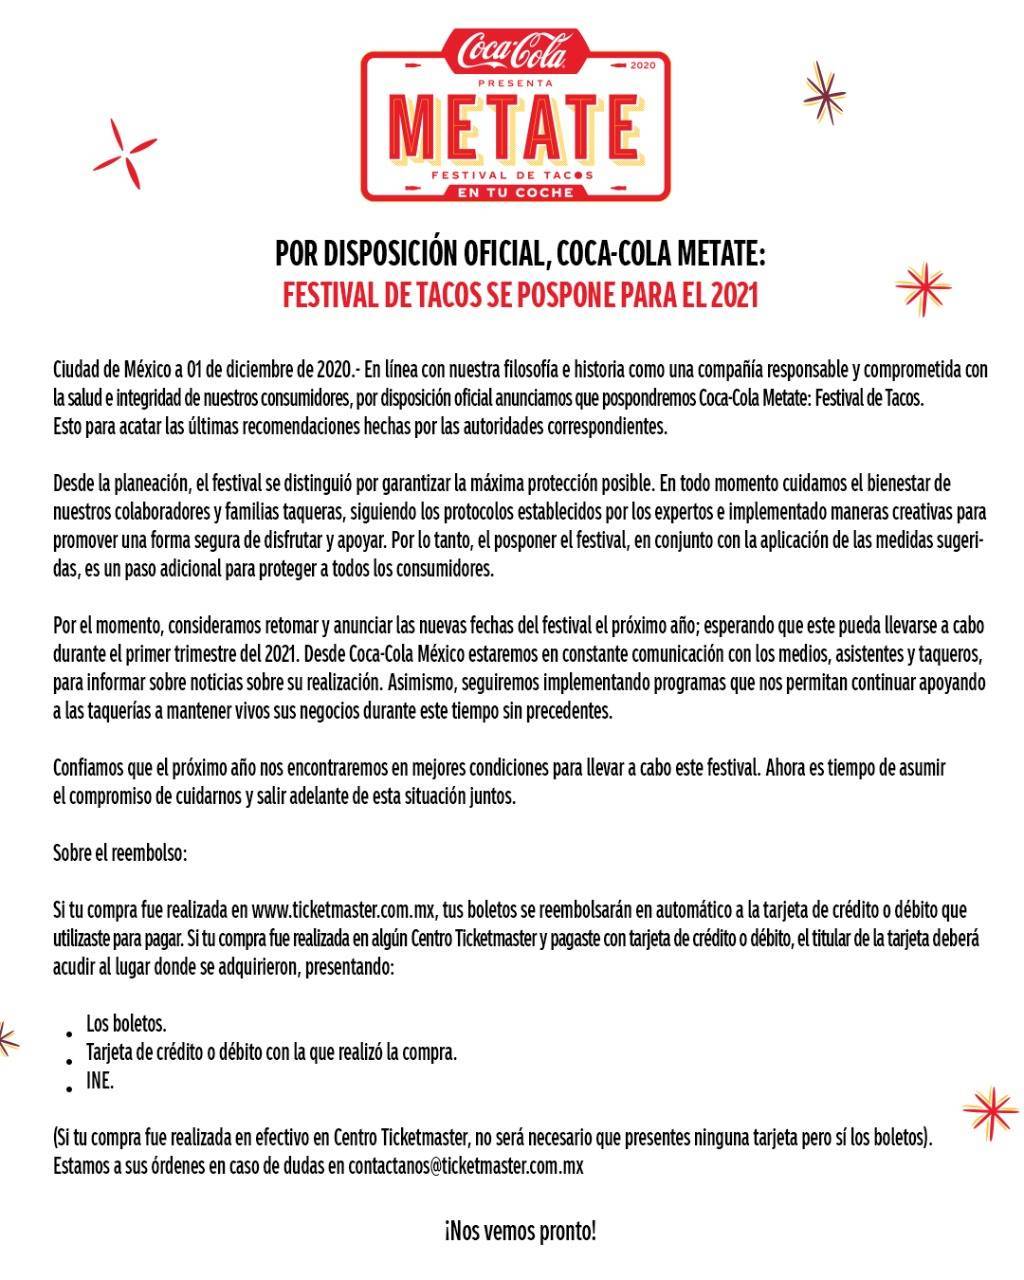 Coca-Cola Metate: Festival de Tacos se pospone para el 2021 1